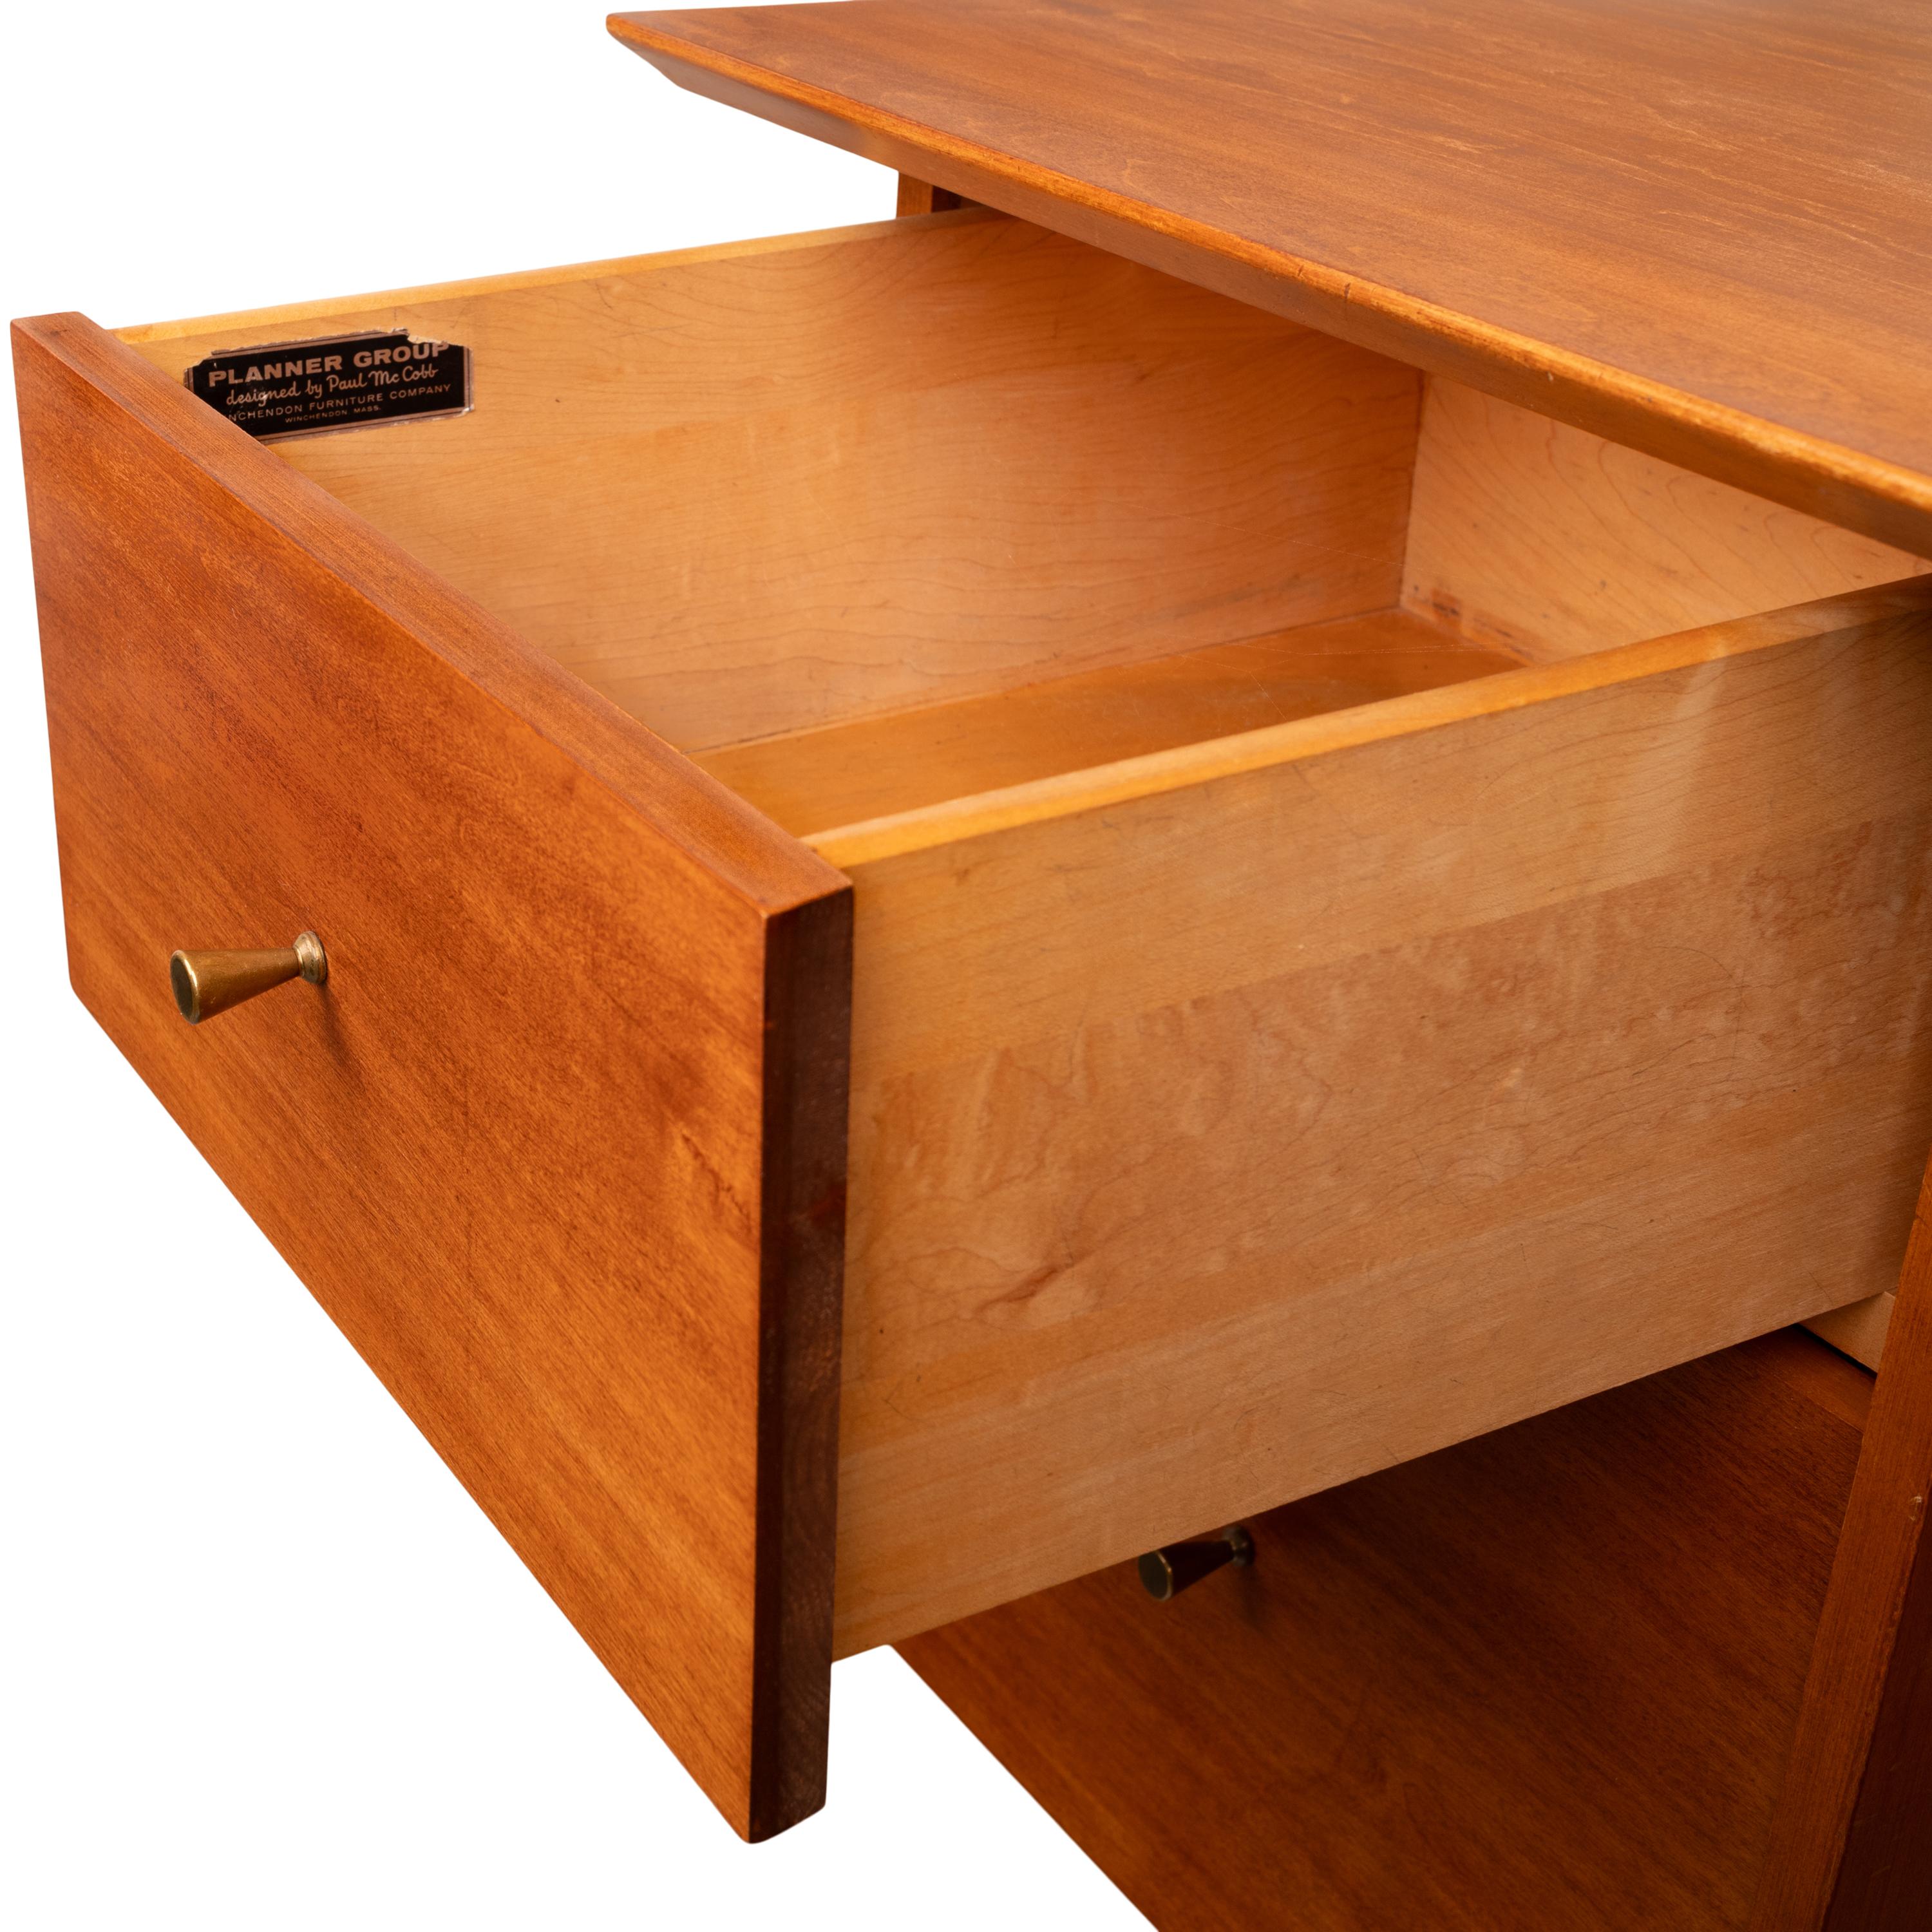 American Mid Century Modern Paul McCobb Planner Group Maple # 1560 Desk 1950's For Sale 10